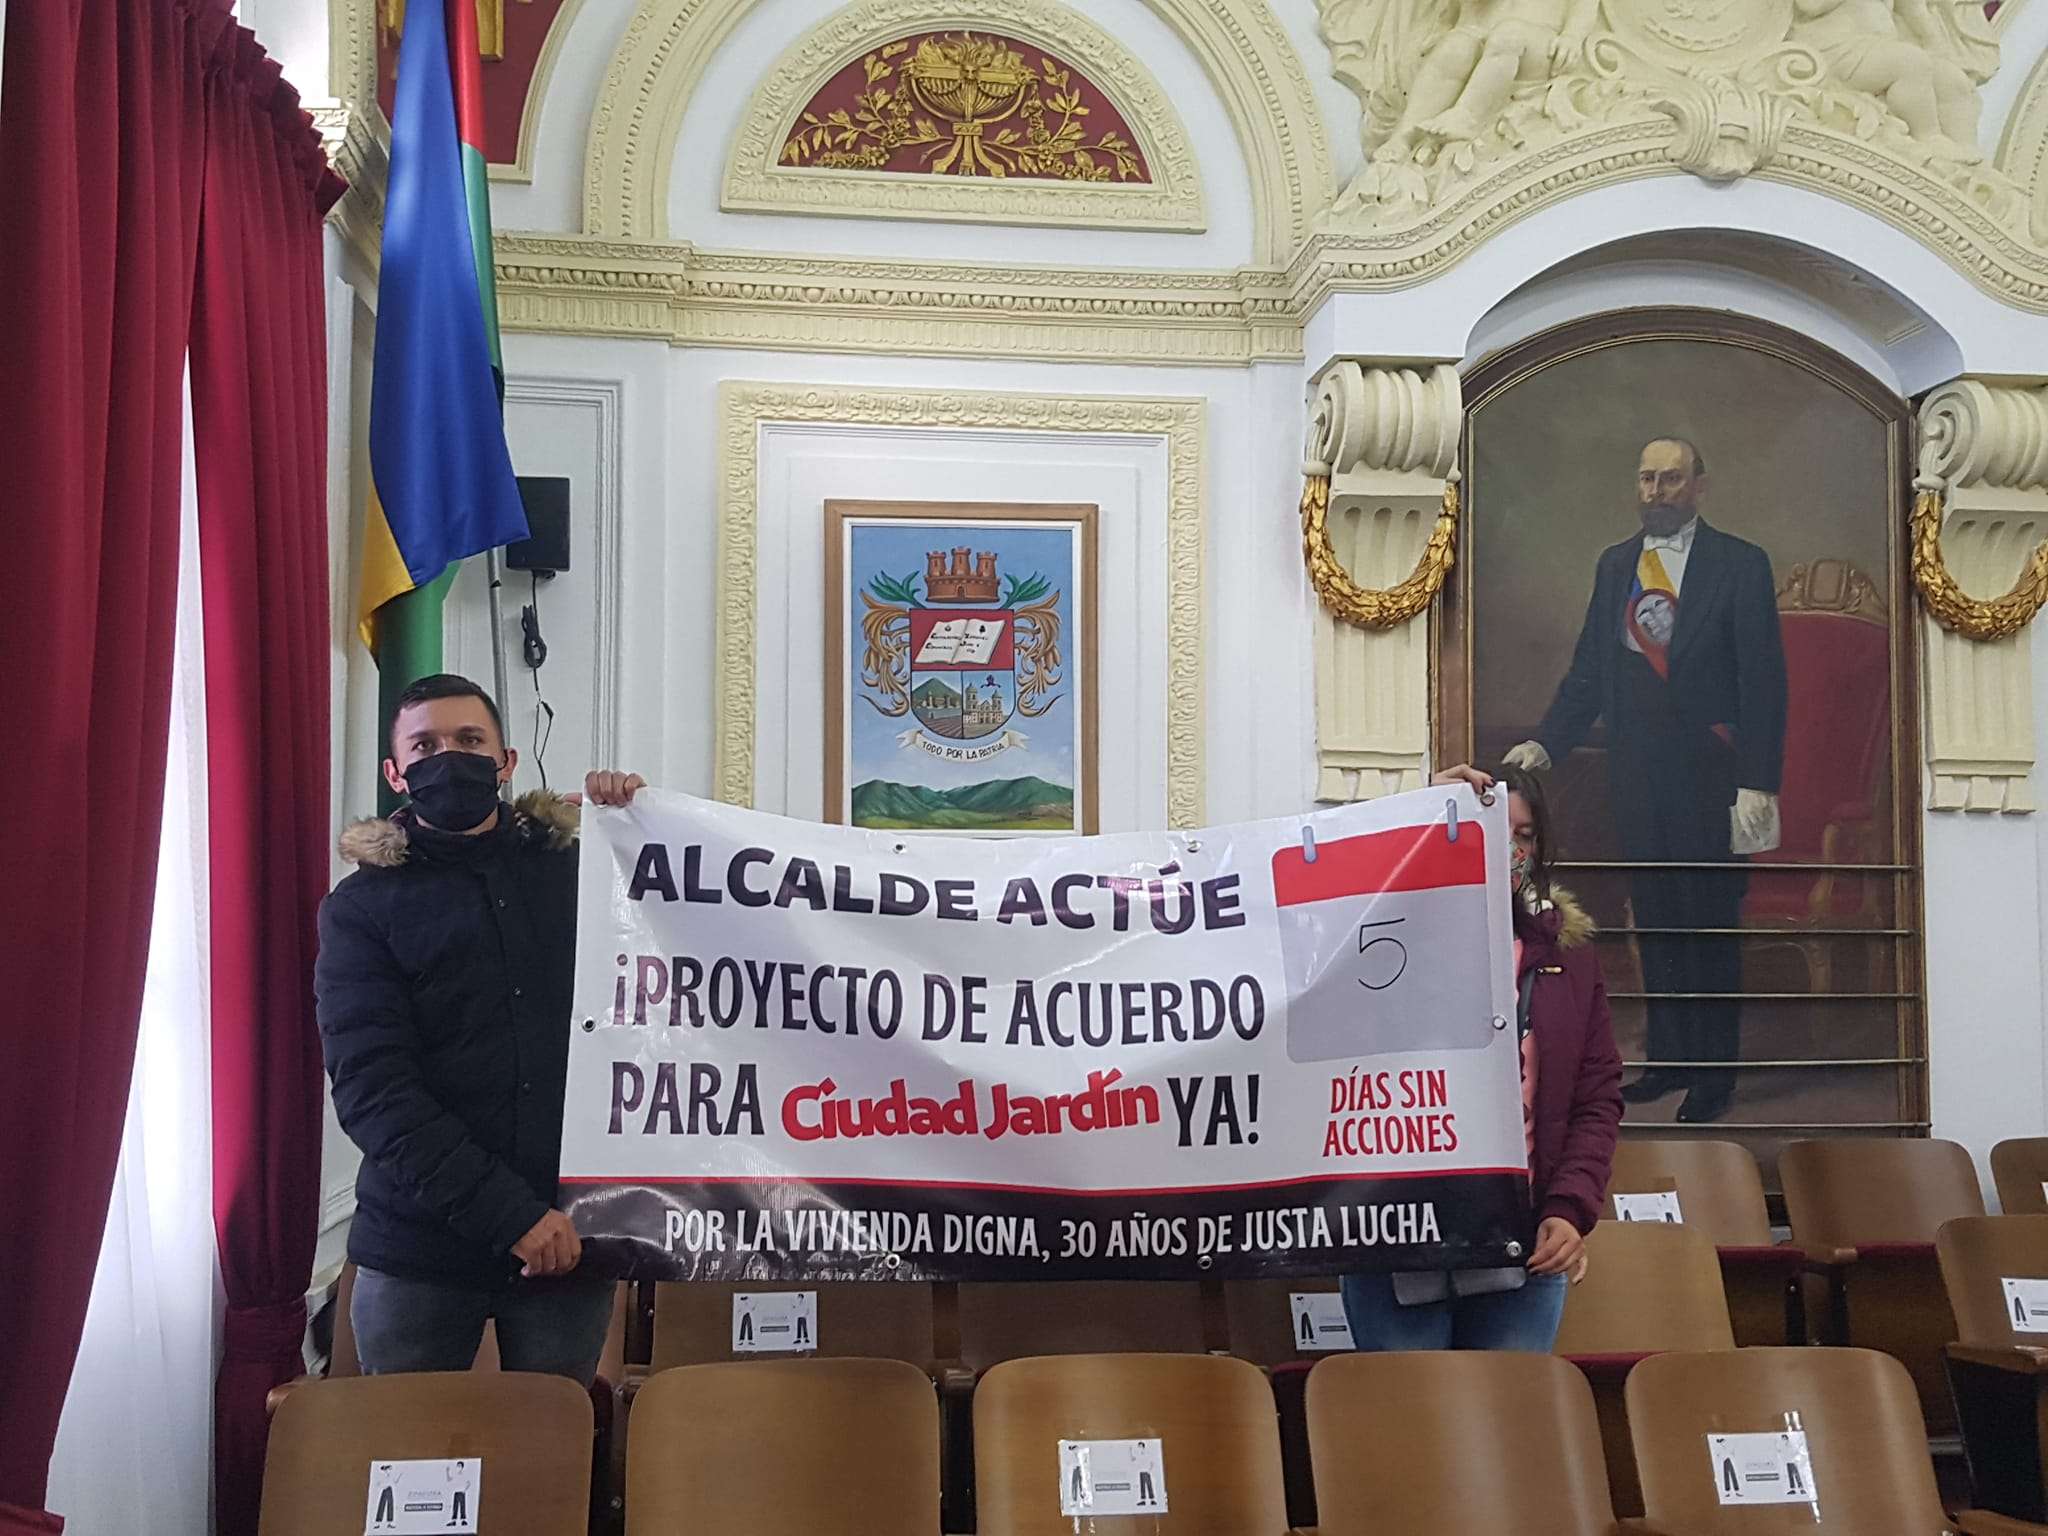 "No es una responsabilidad de la administración, es un pleito legal entre privados": alcalde de Zipaquirá